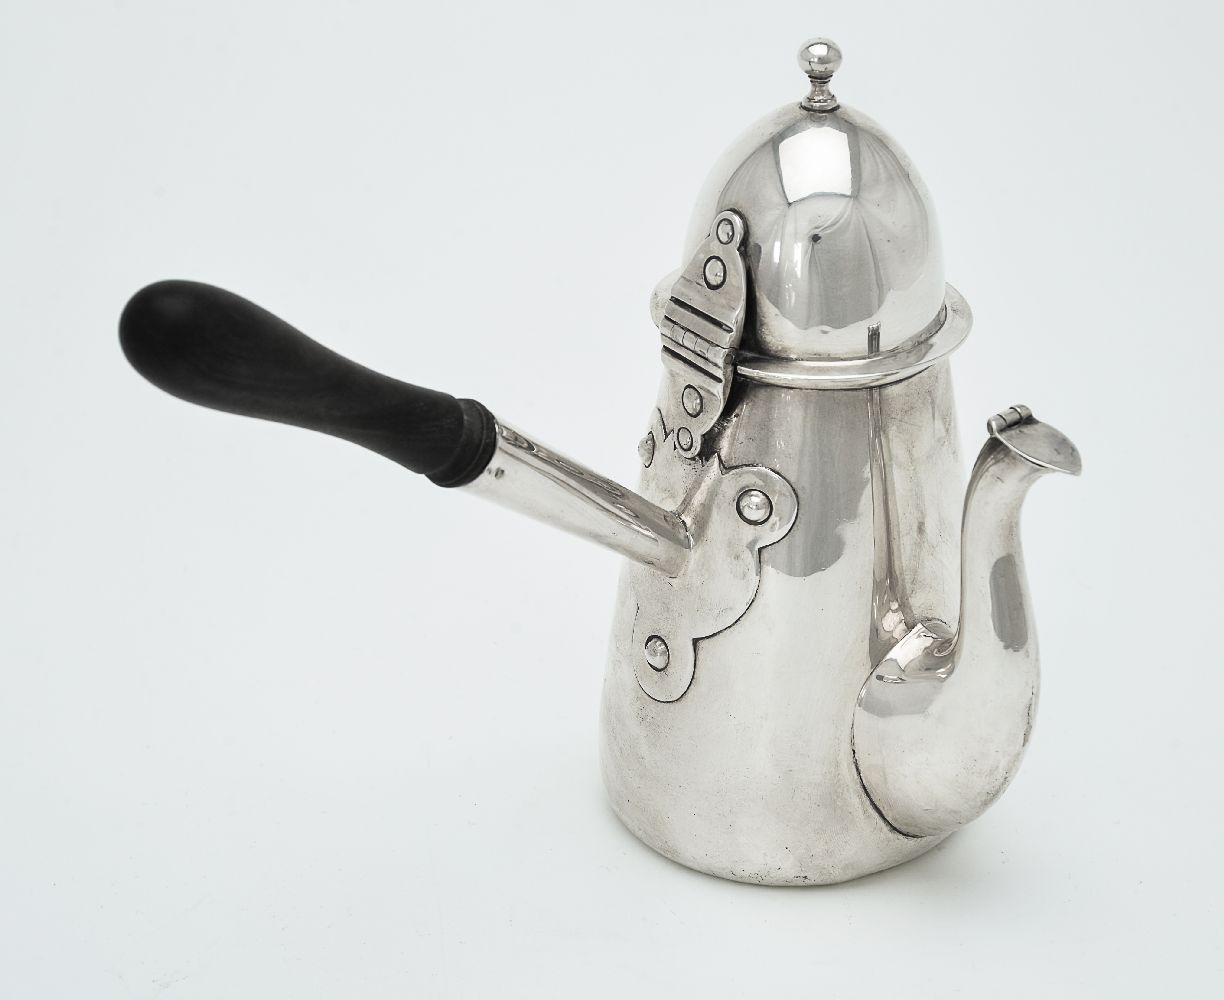 ϒ A late Victorian silver side-handled coffee pot by Thomas Hayes